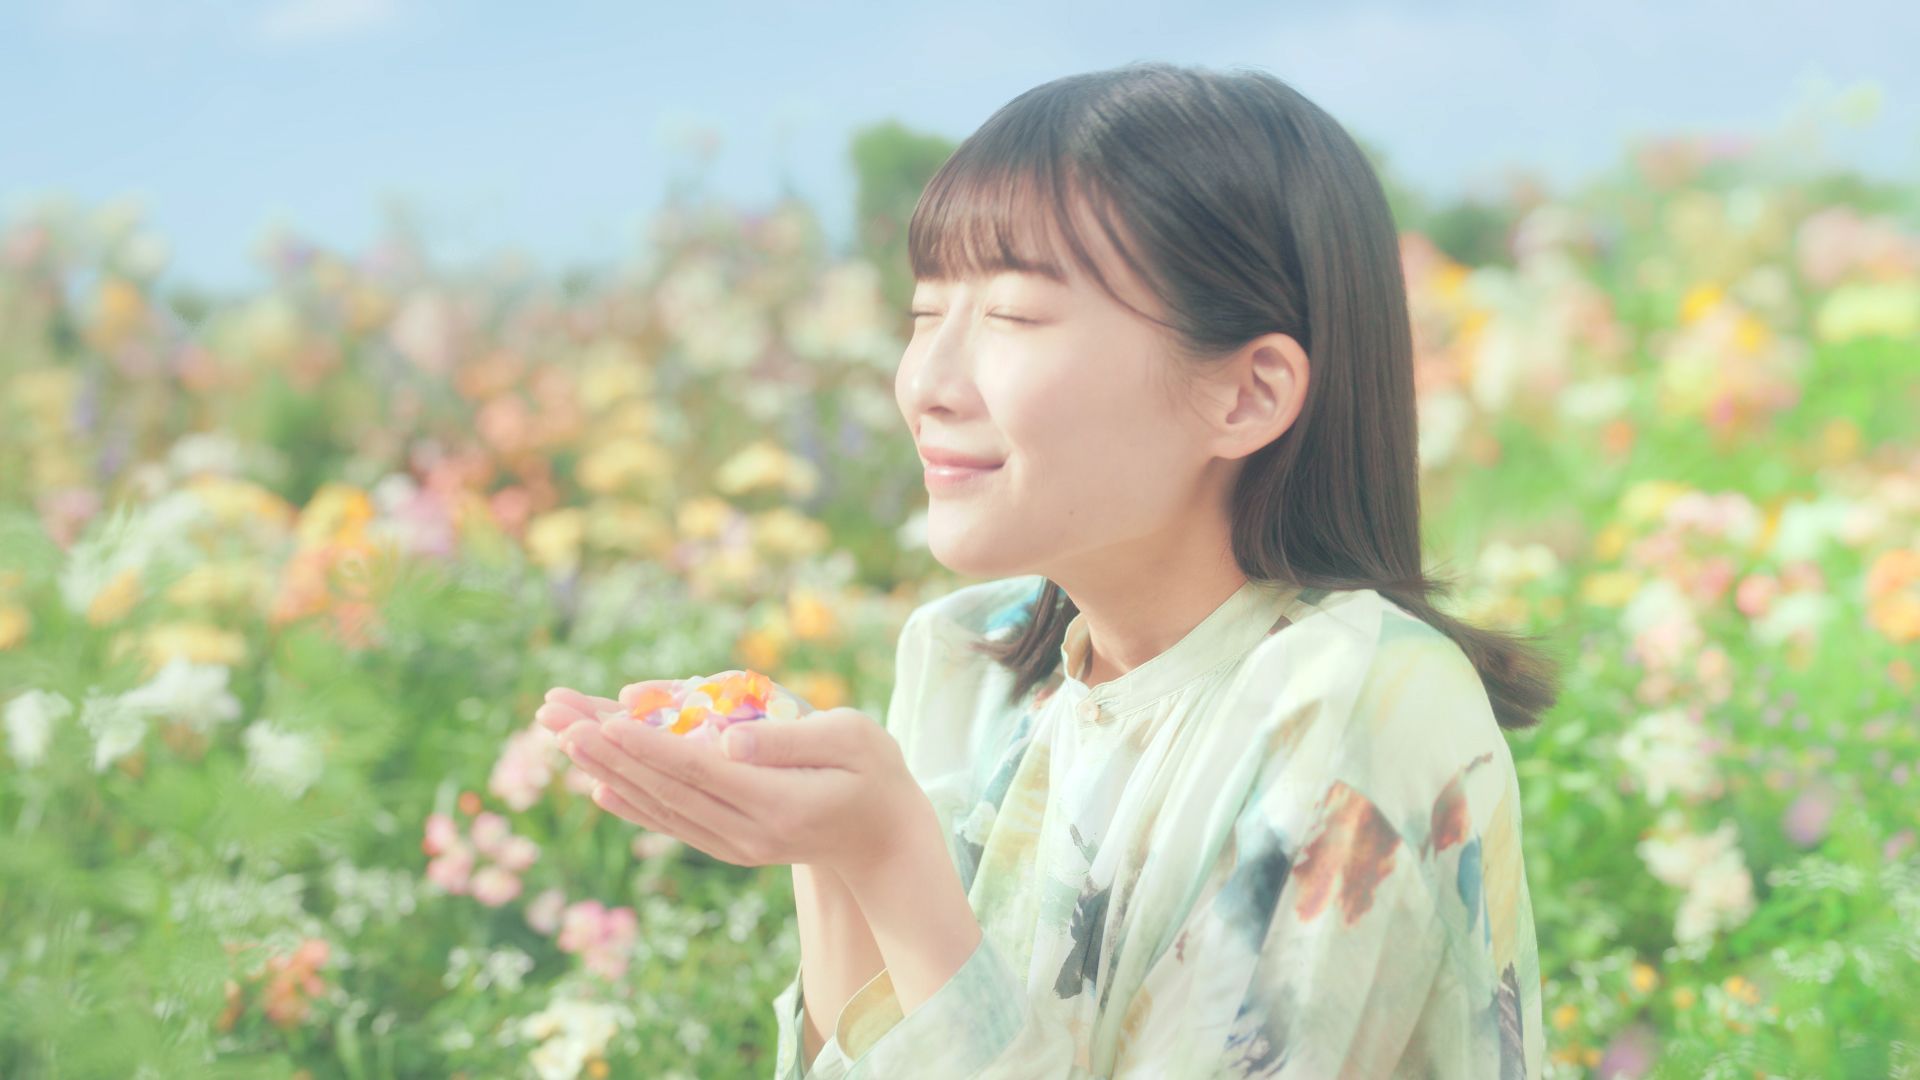 新TV-CM「わたしオン、気持ちいい春」篇15秒ストーリー